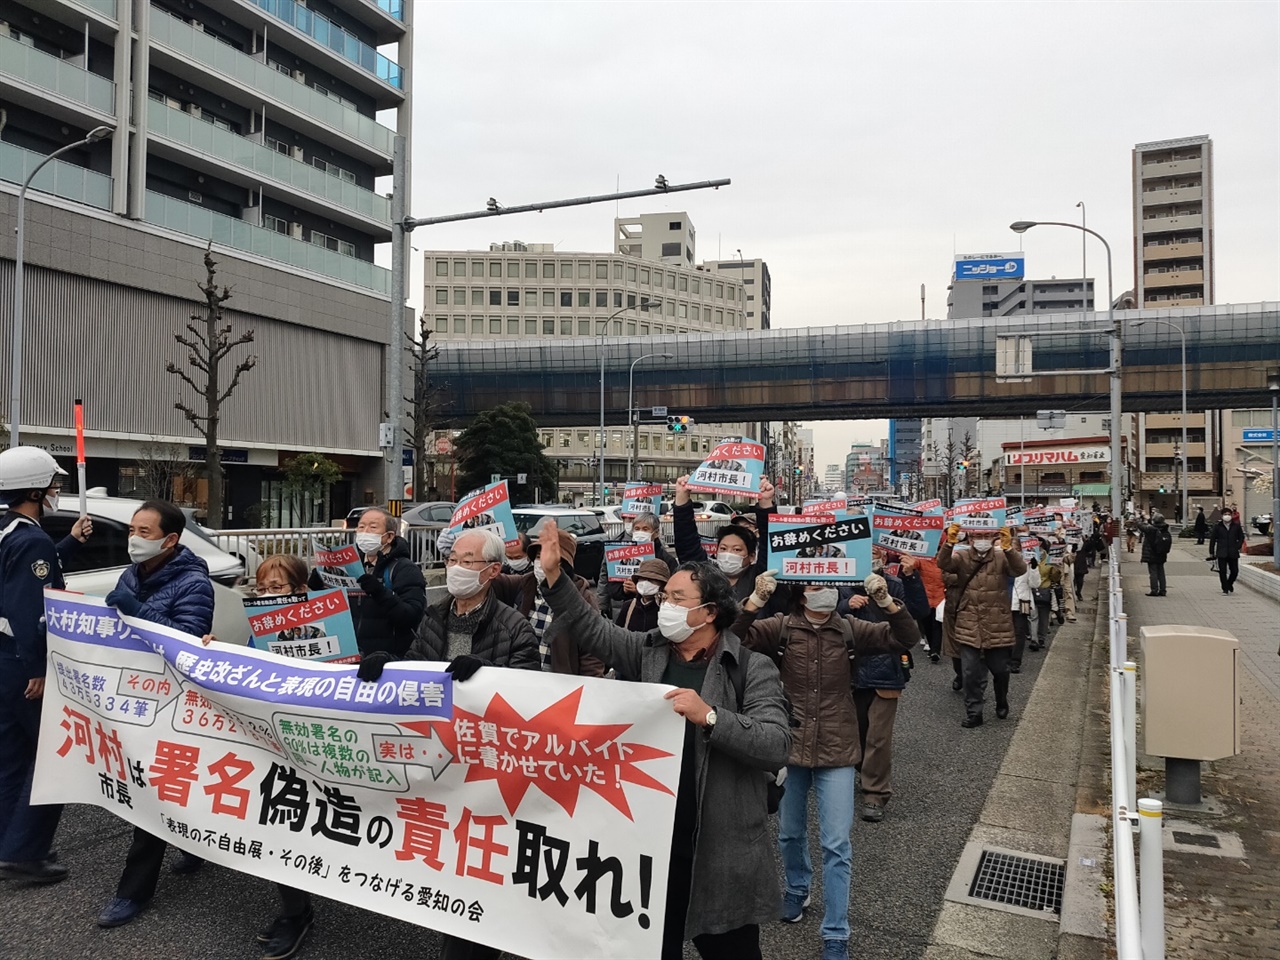 '가와무라 시장은 서명 조작의 책임을 져라'는 현수막을 들고 거리 시위중인 집회 참가자들